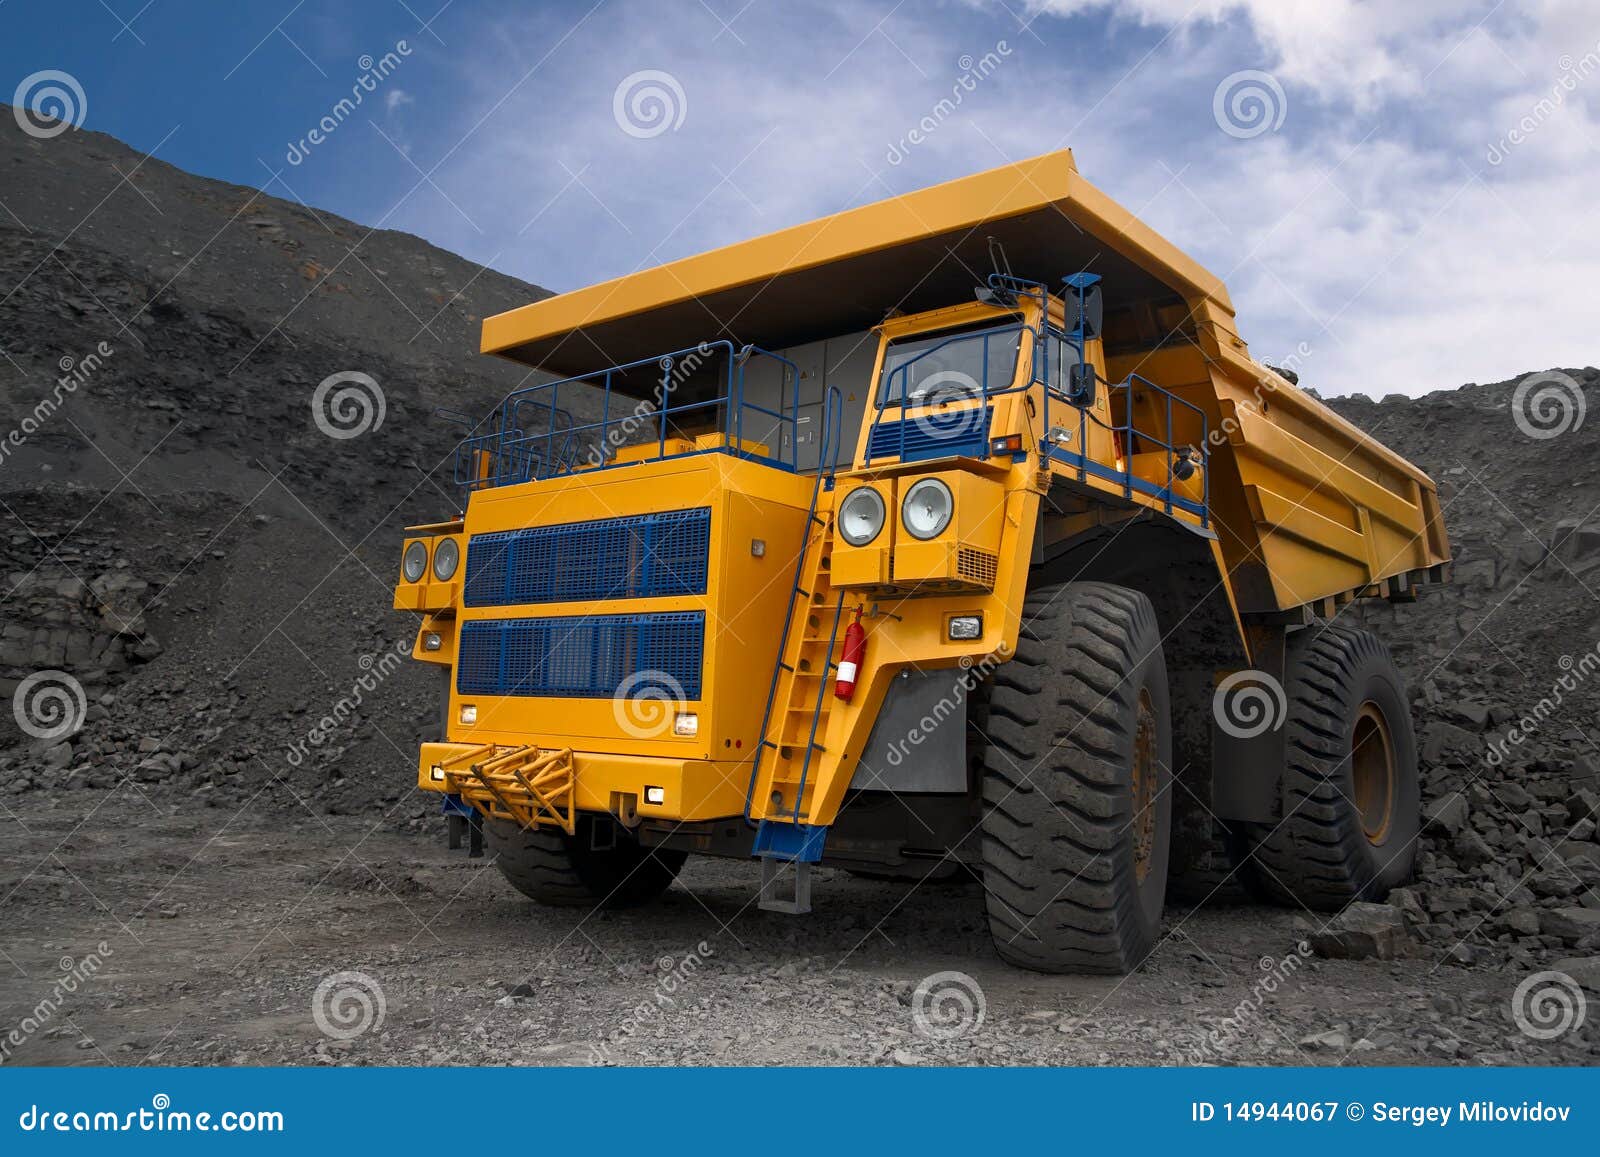 big mining truck